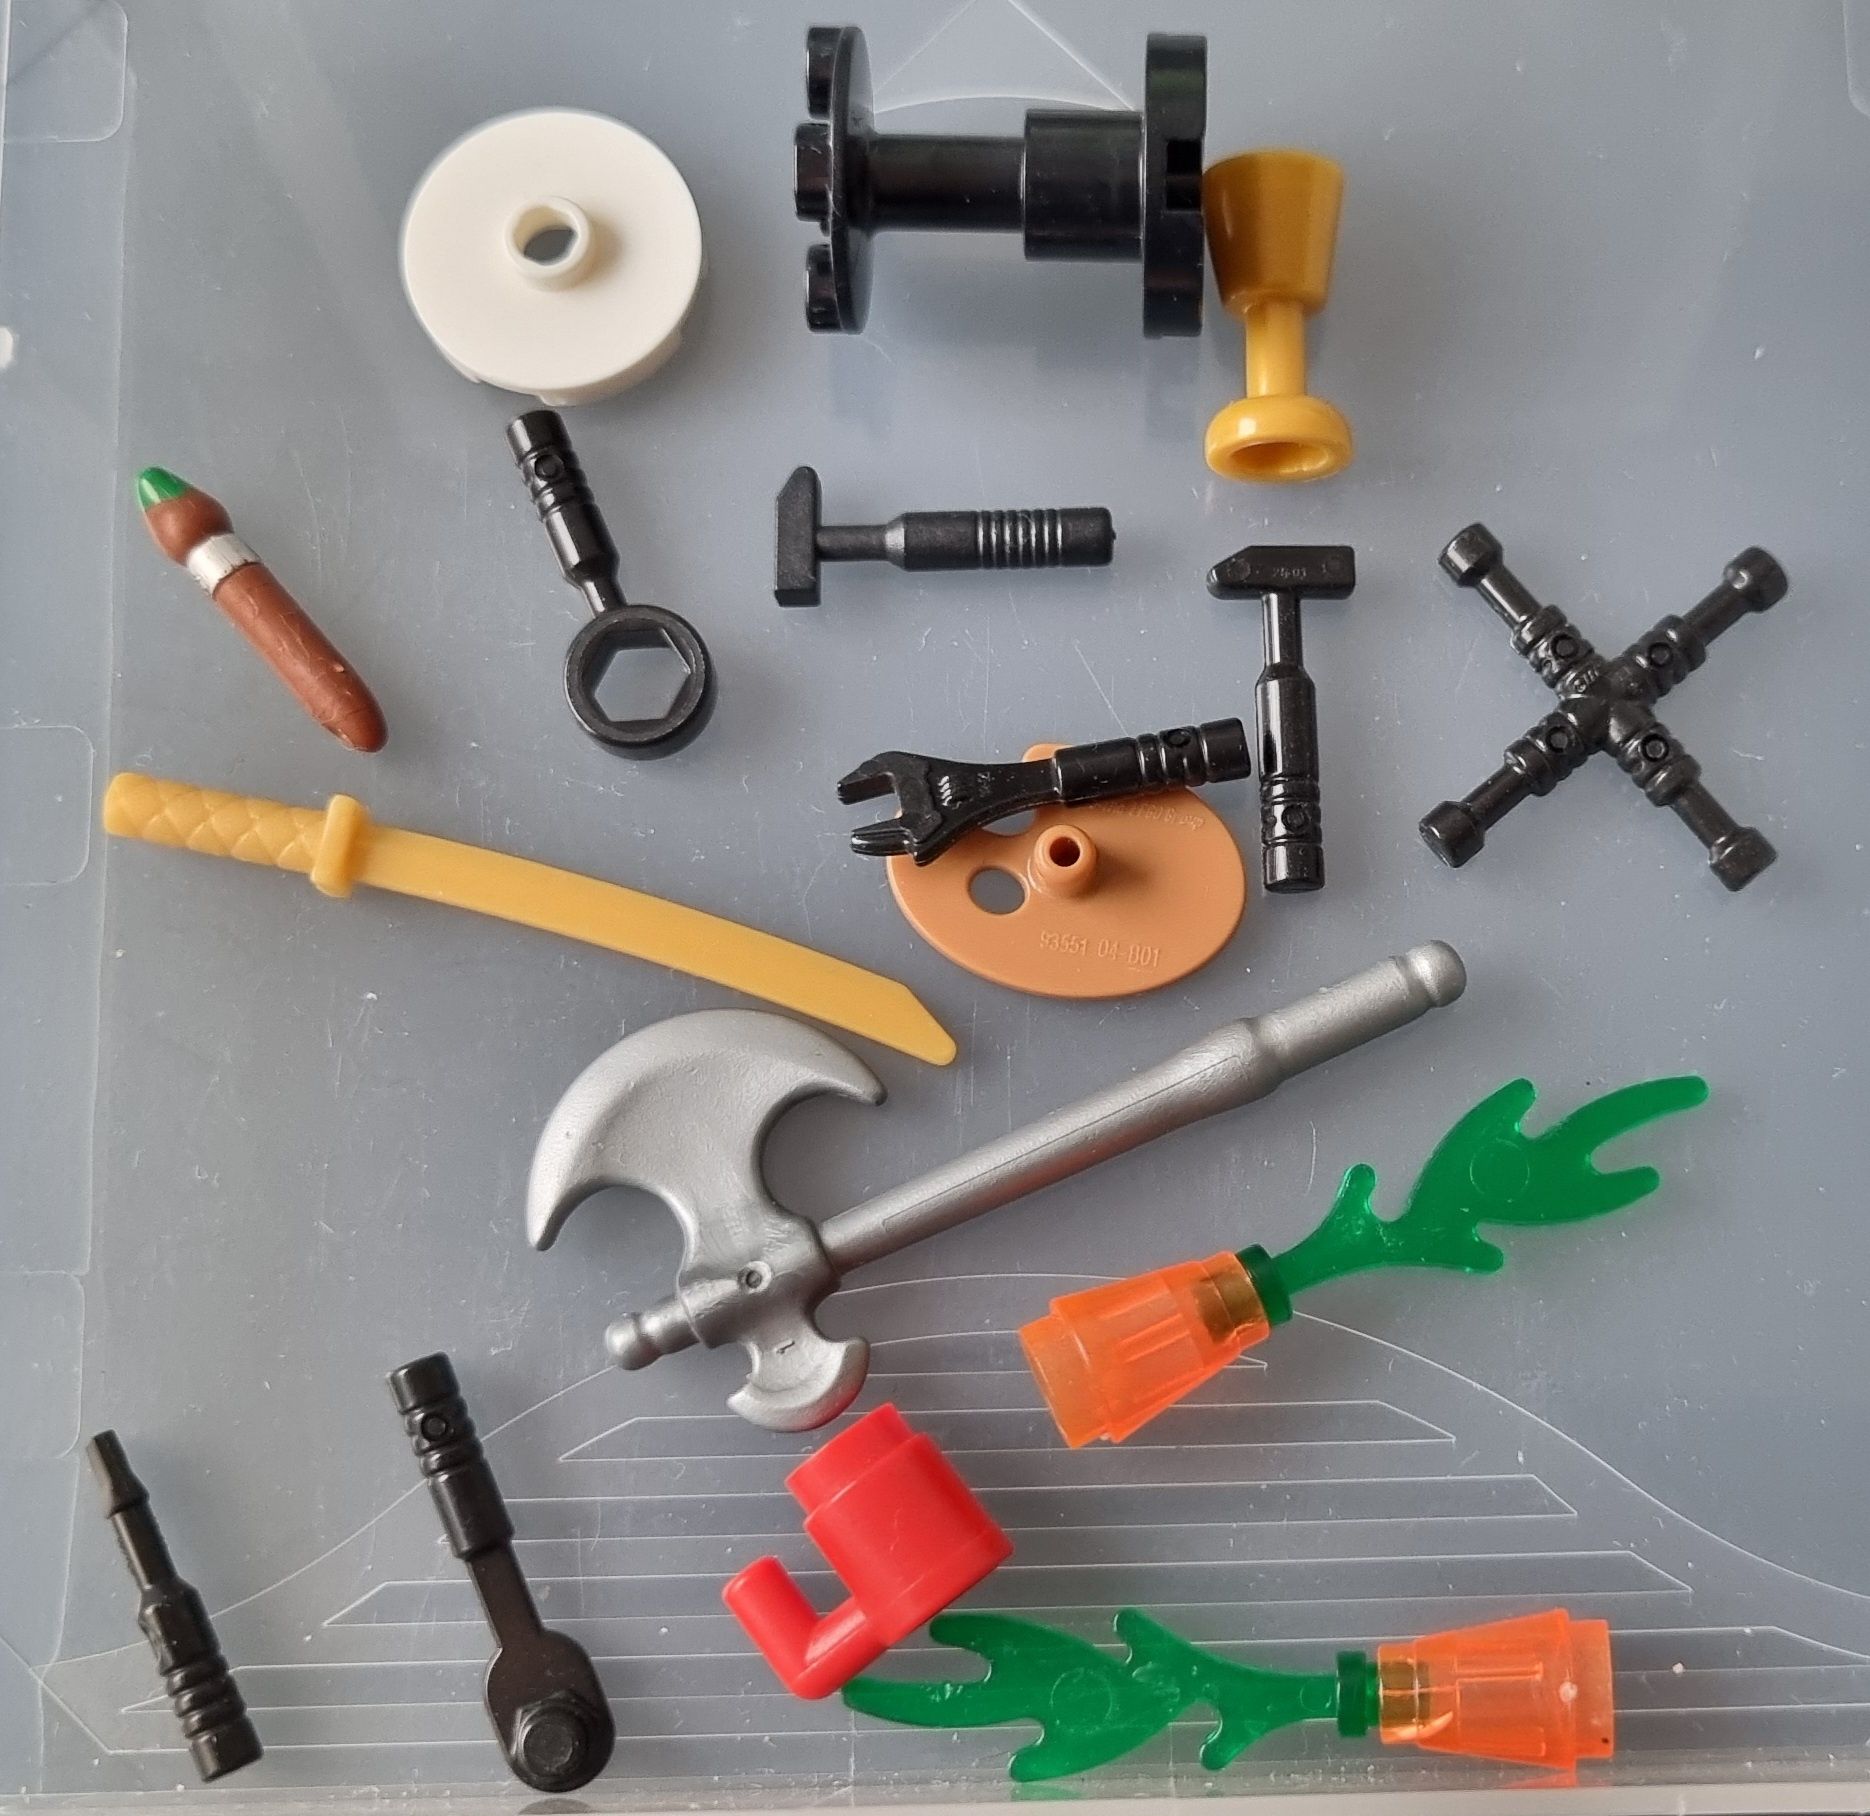 Lego - drobne elememty 1x1 + narzędzia figurek